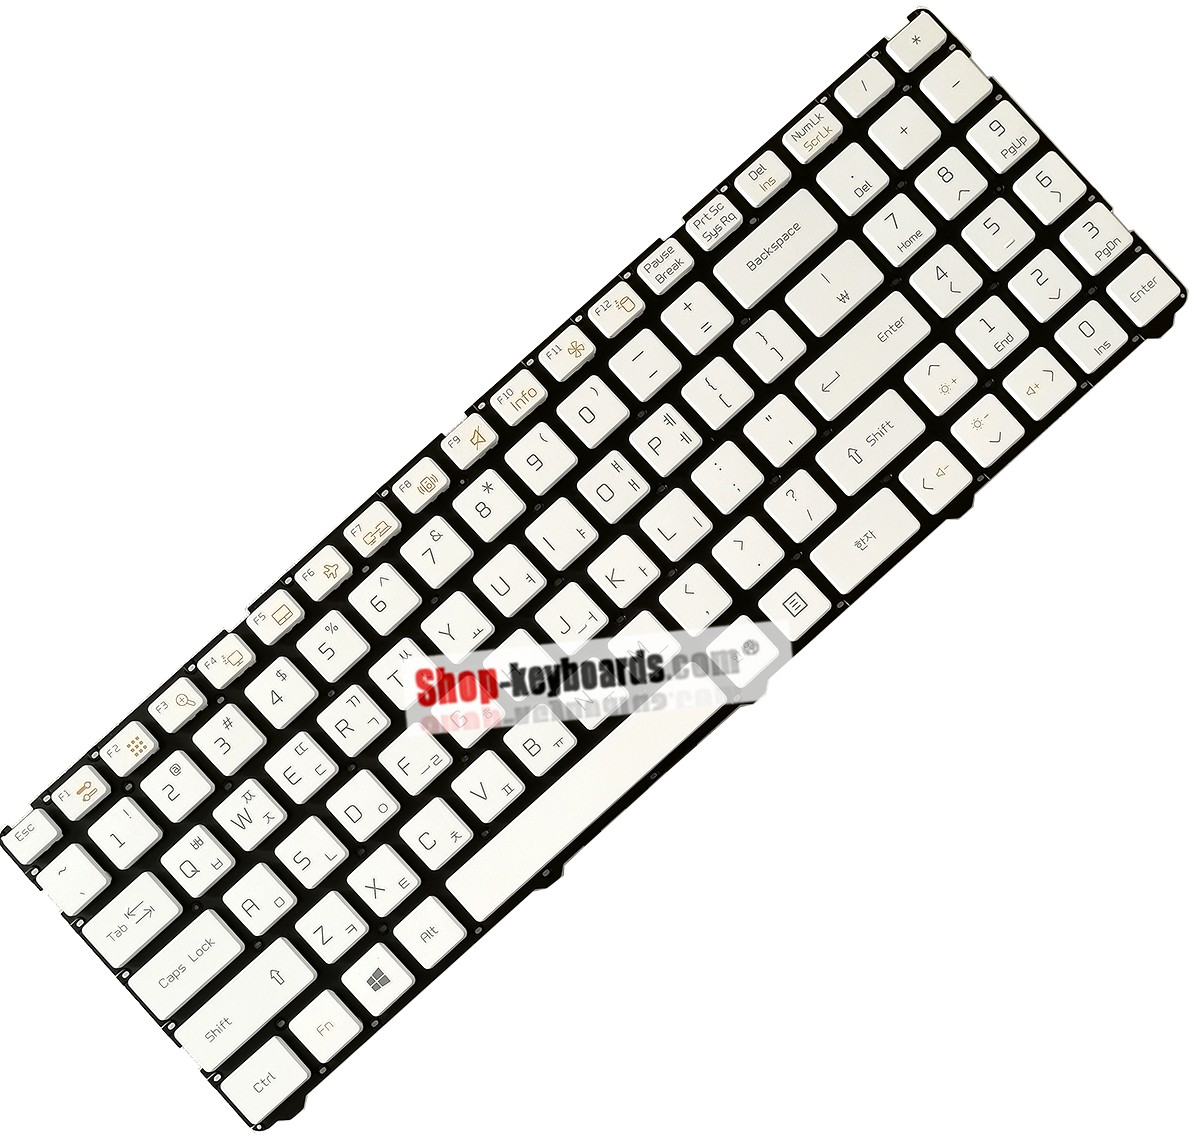 LG LG9 Keyboard replacement